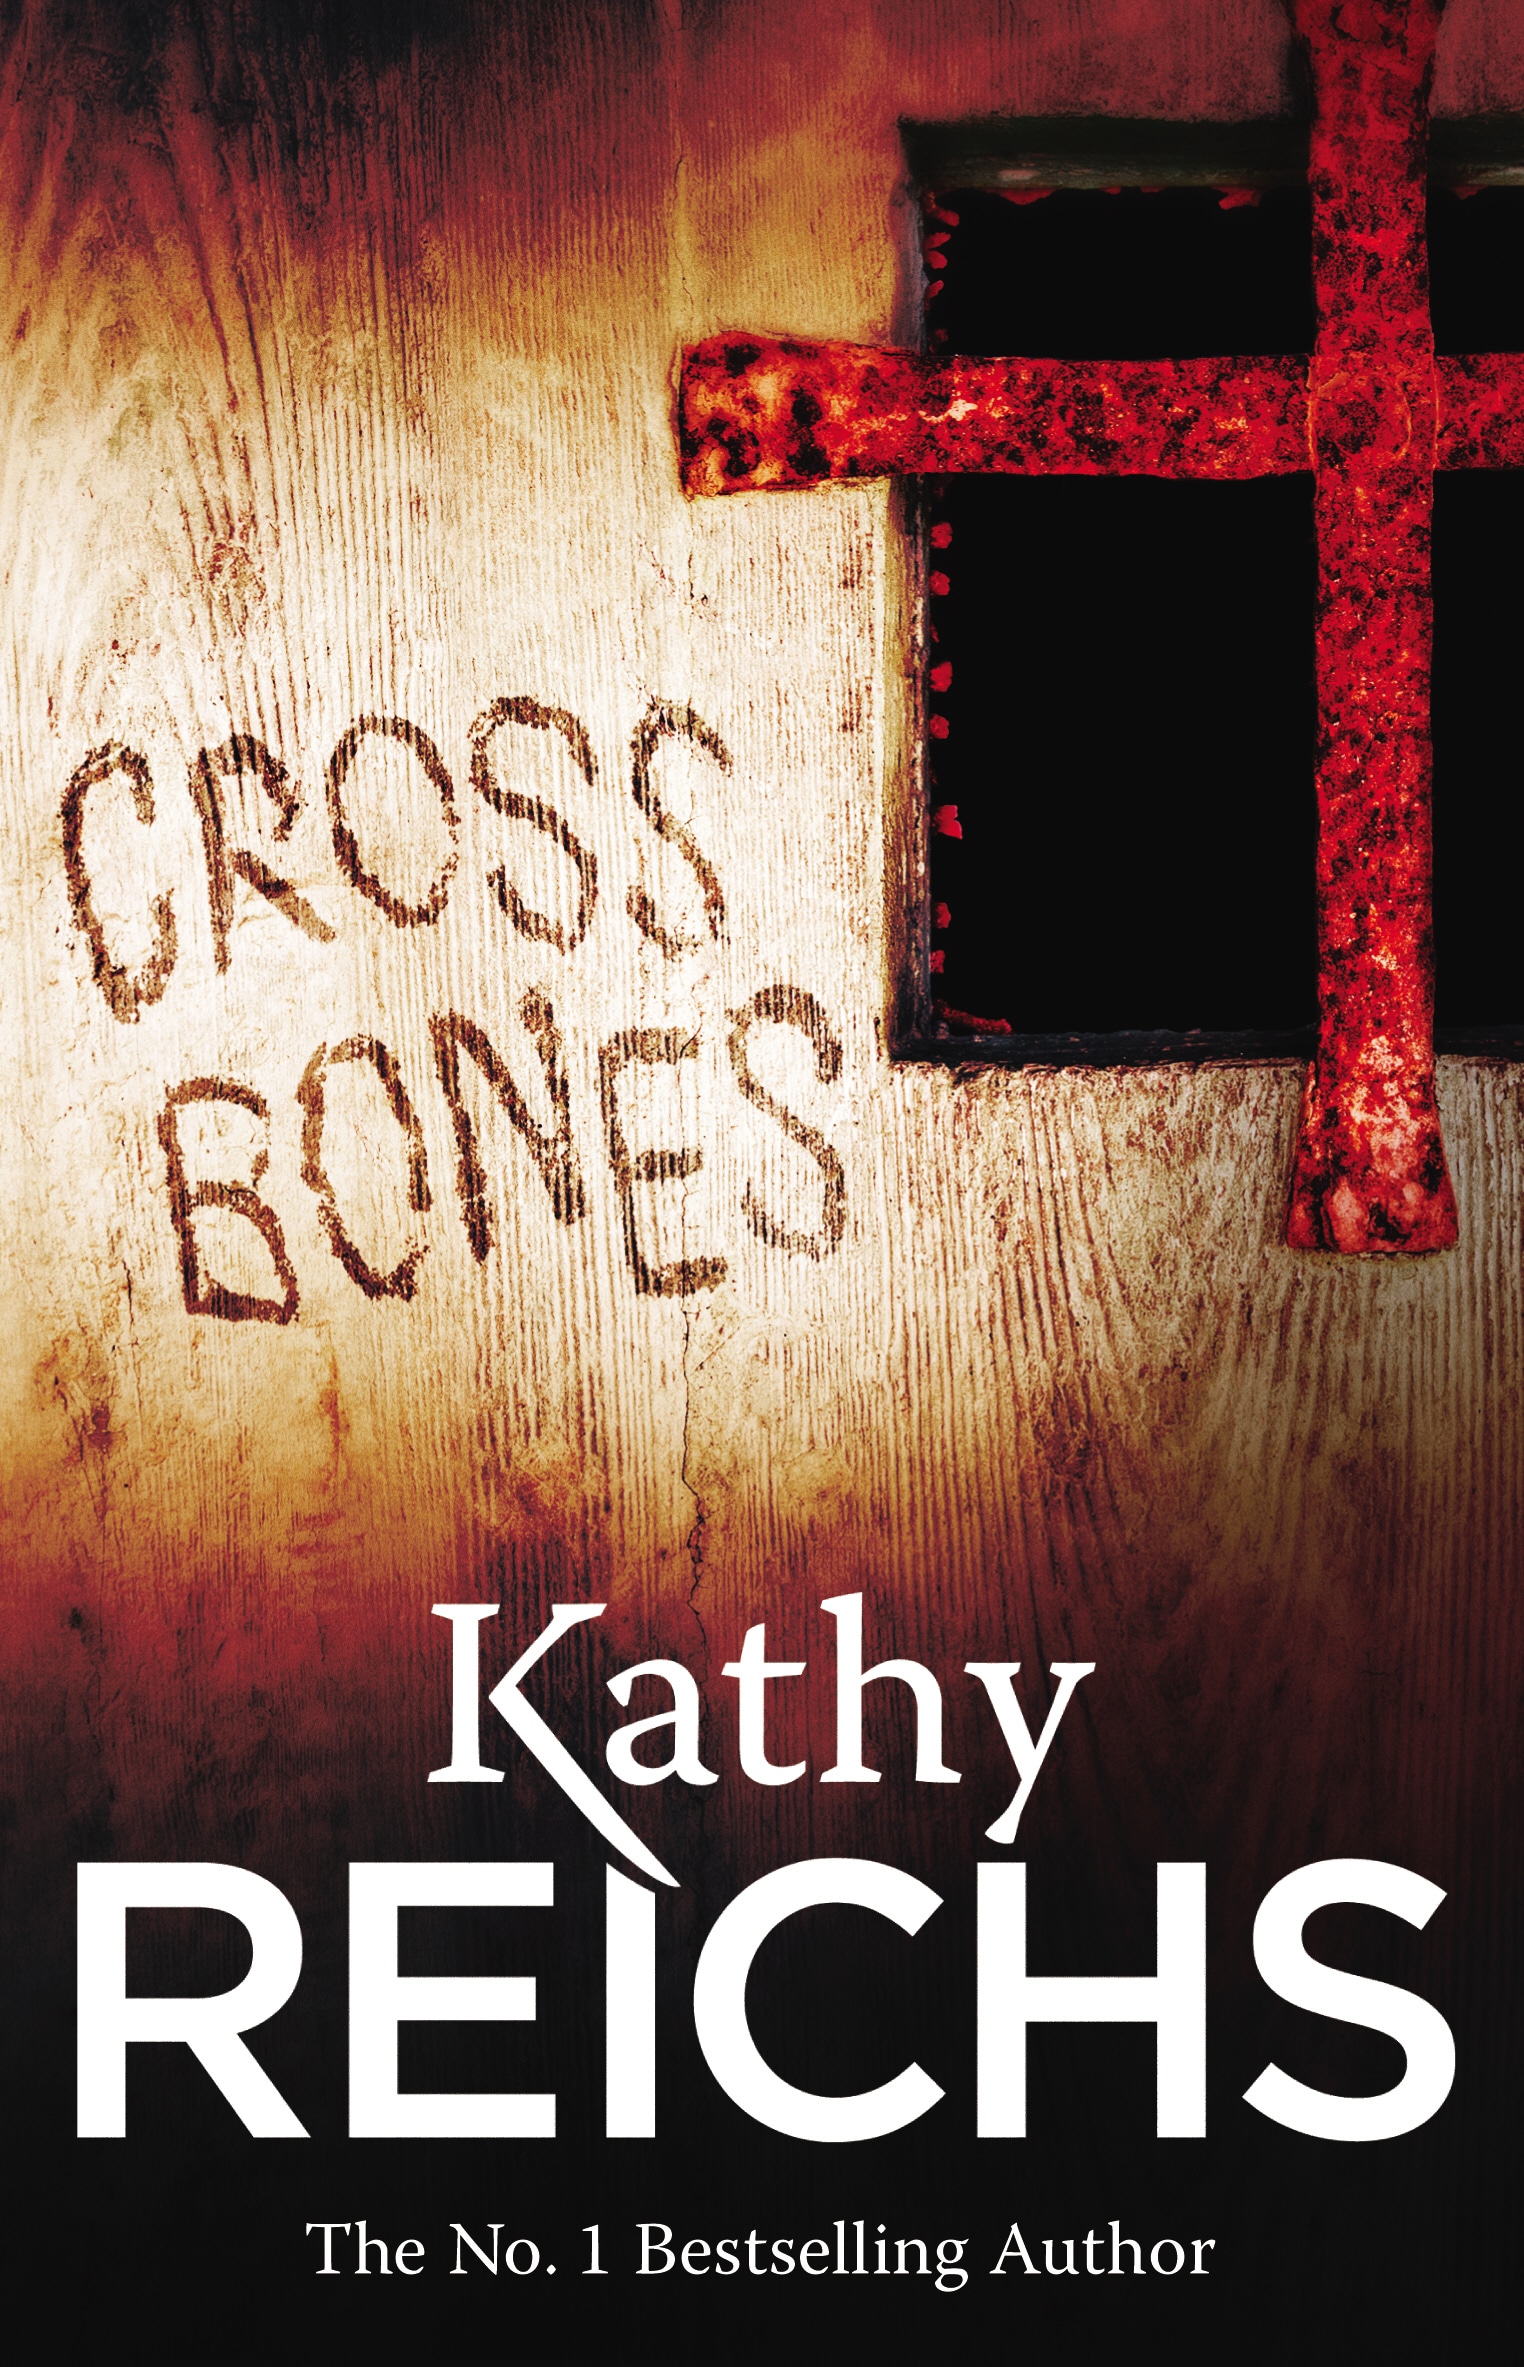 Kathy Reichs' Bones books in order